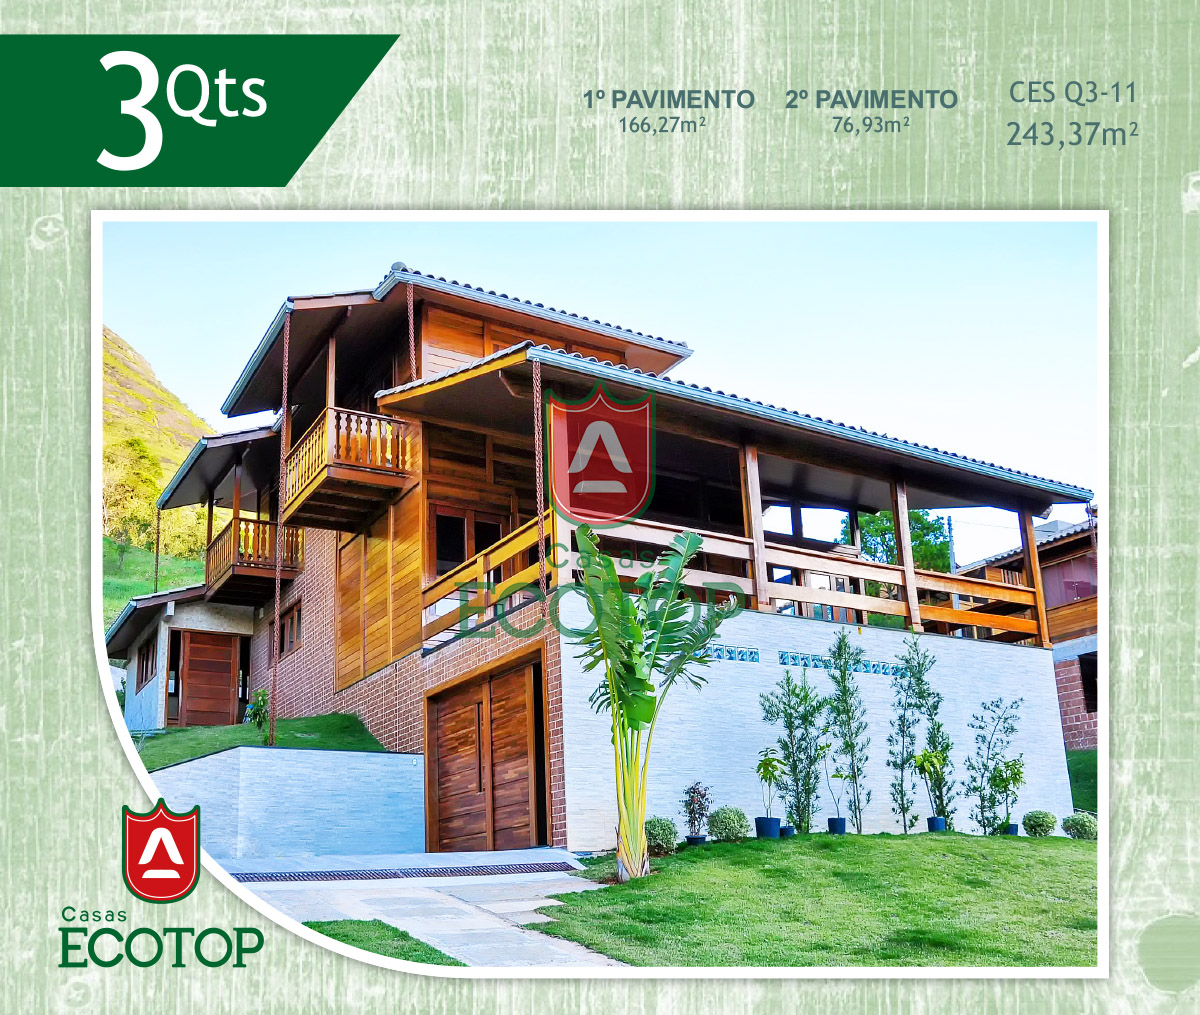 ces-11-fachada-casas-de-madeira-ecotop.cdr